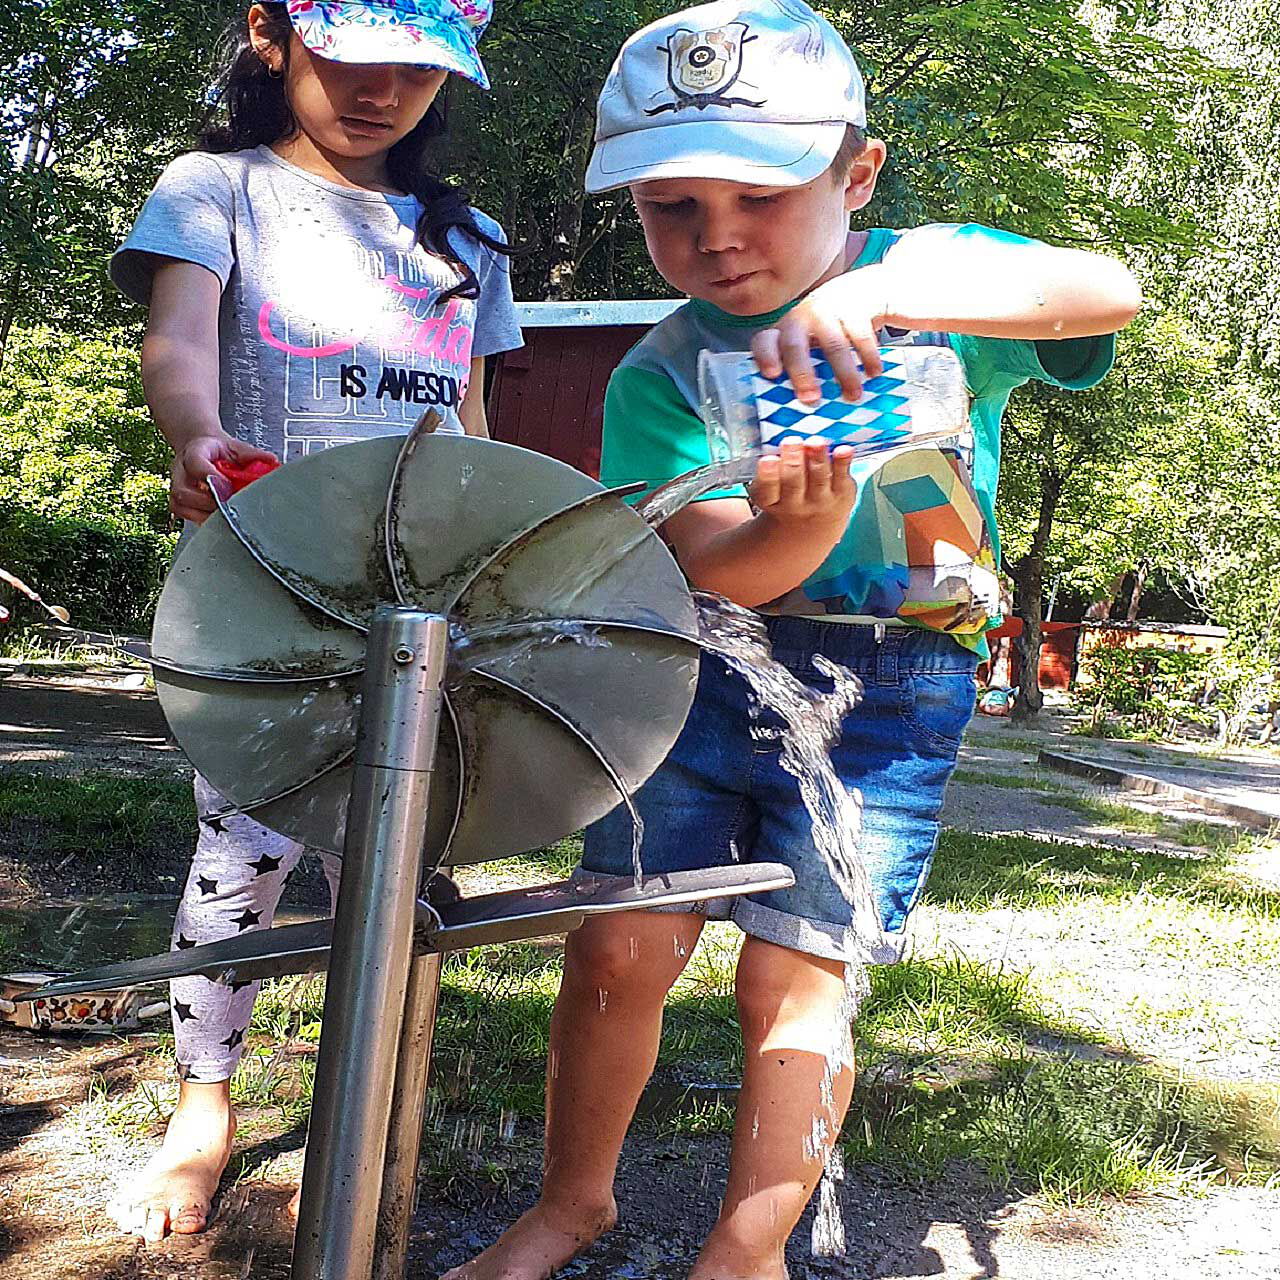 Ein Wasserrad aus Metall im Gartenbereich. Zwei Kinder spielen mit dem Wasserrad und mit Wasser befüllte Becher.